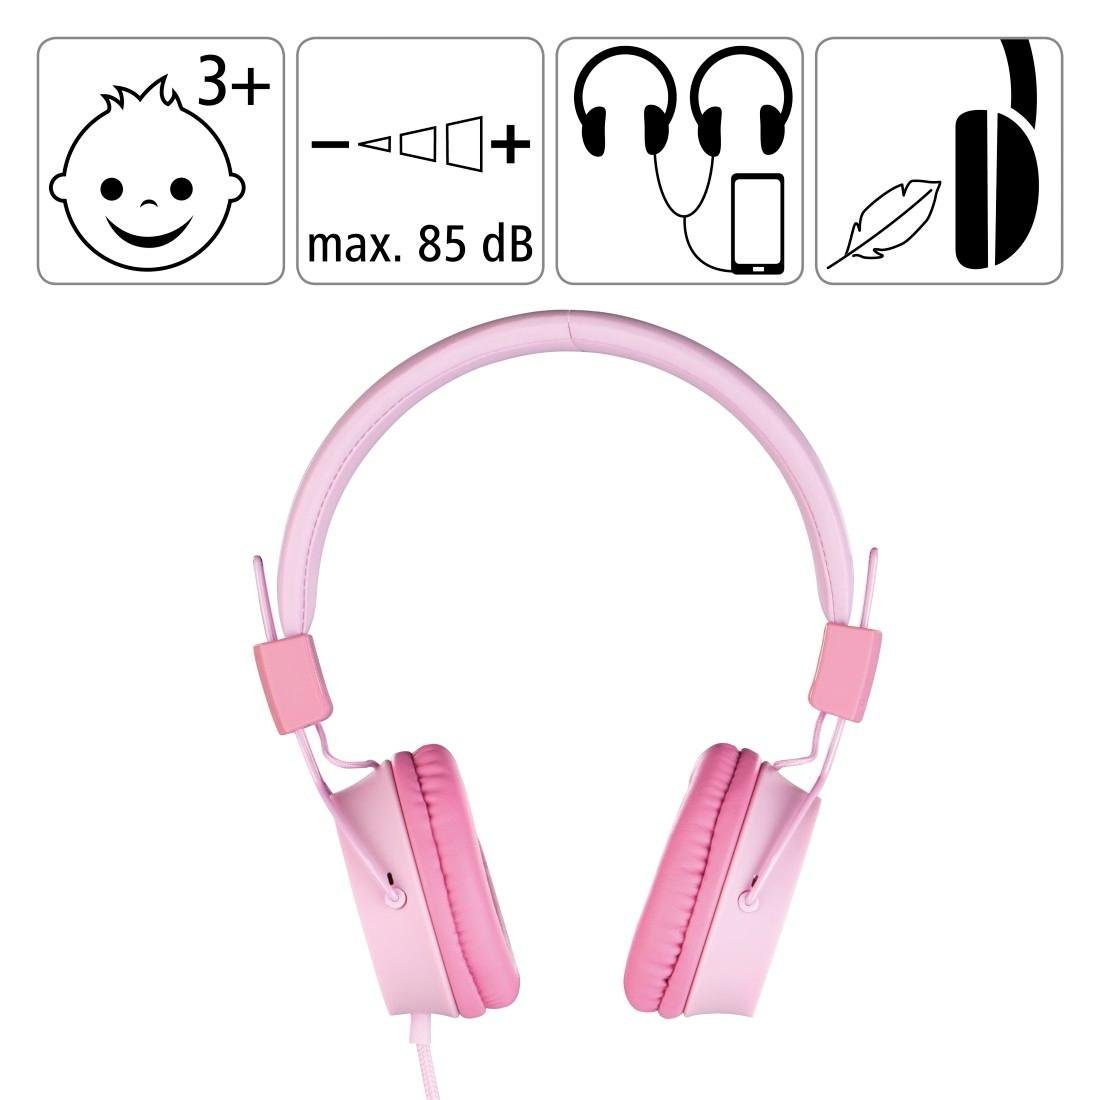 Thomson Kinderkopfhörer mit Kabel pink zusammenfaltbar, On-Ear, leicht 85dB weiterer On-Ear-Kopfhörer (größenverstellbar Kopfhöreranschluss möglich) auf Lautstärkebegrenzung